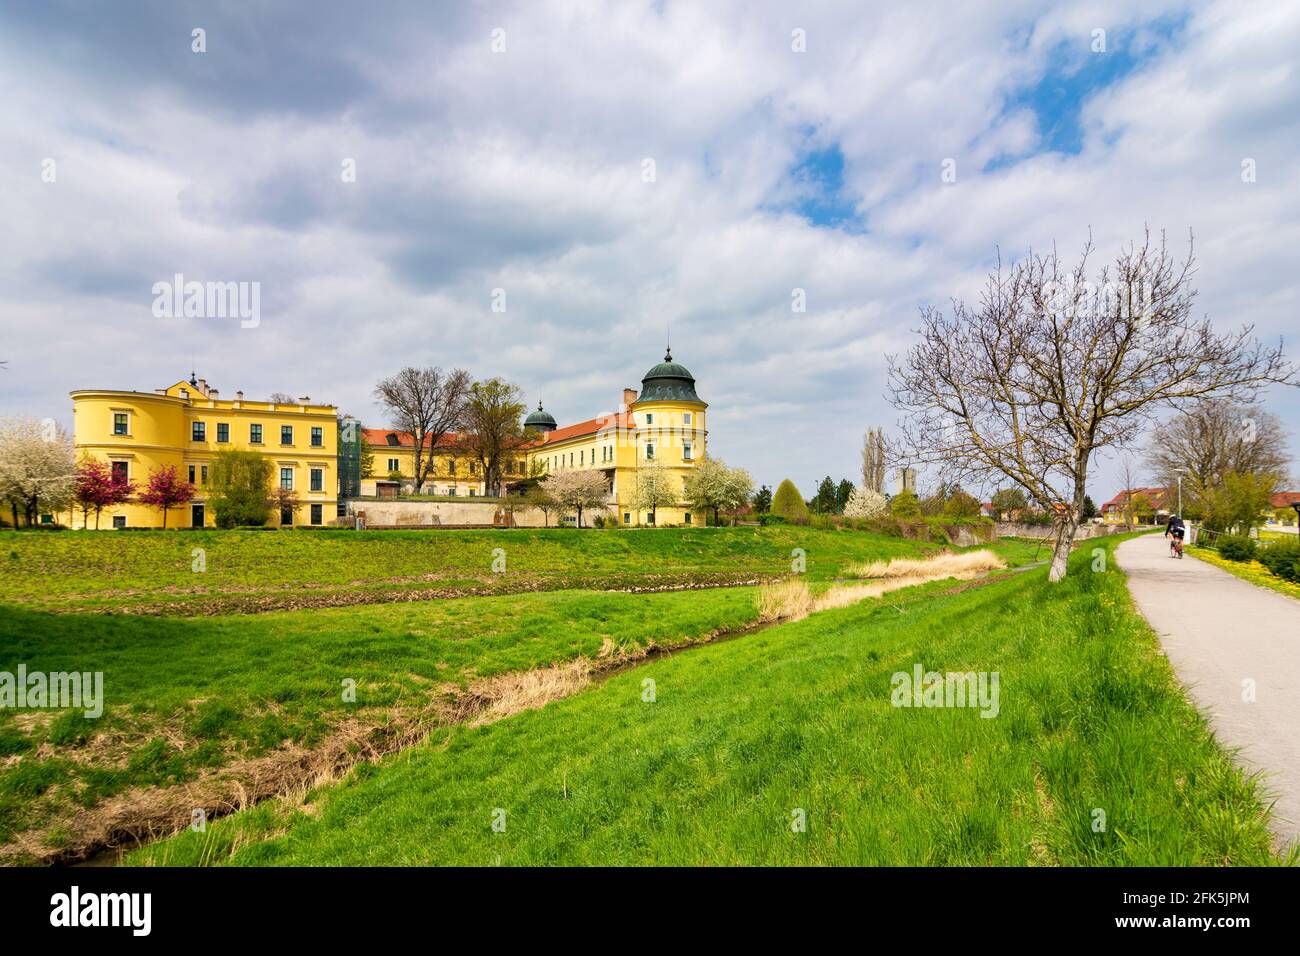 Judenau: Schloss Judenau, Zusammenfluss der Bäche kleine Tulln und große Tulln im Mostviertels, Niederösterreich, Niederösterreich, Österreich Stockfoto